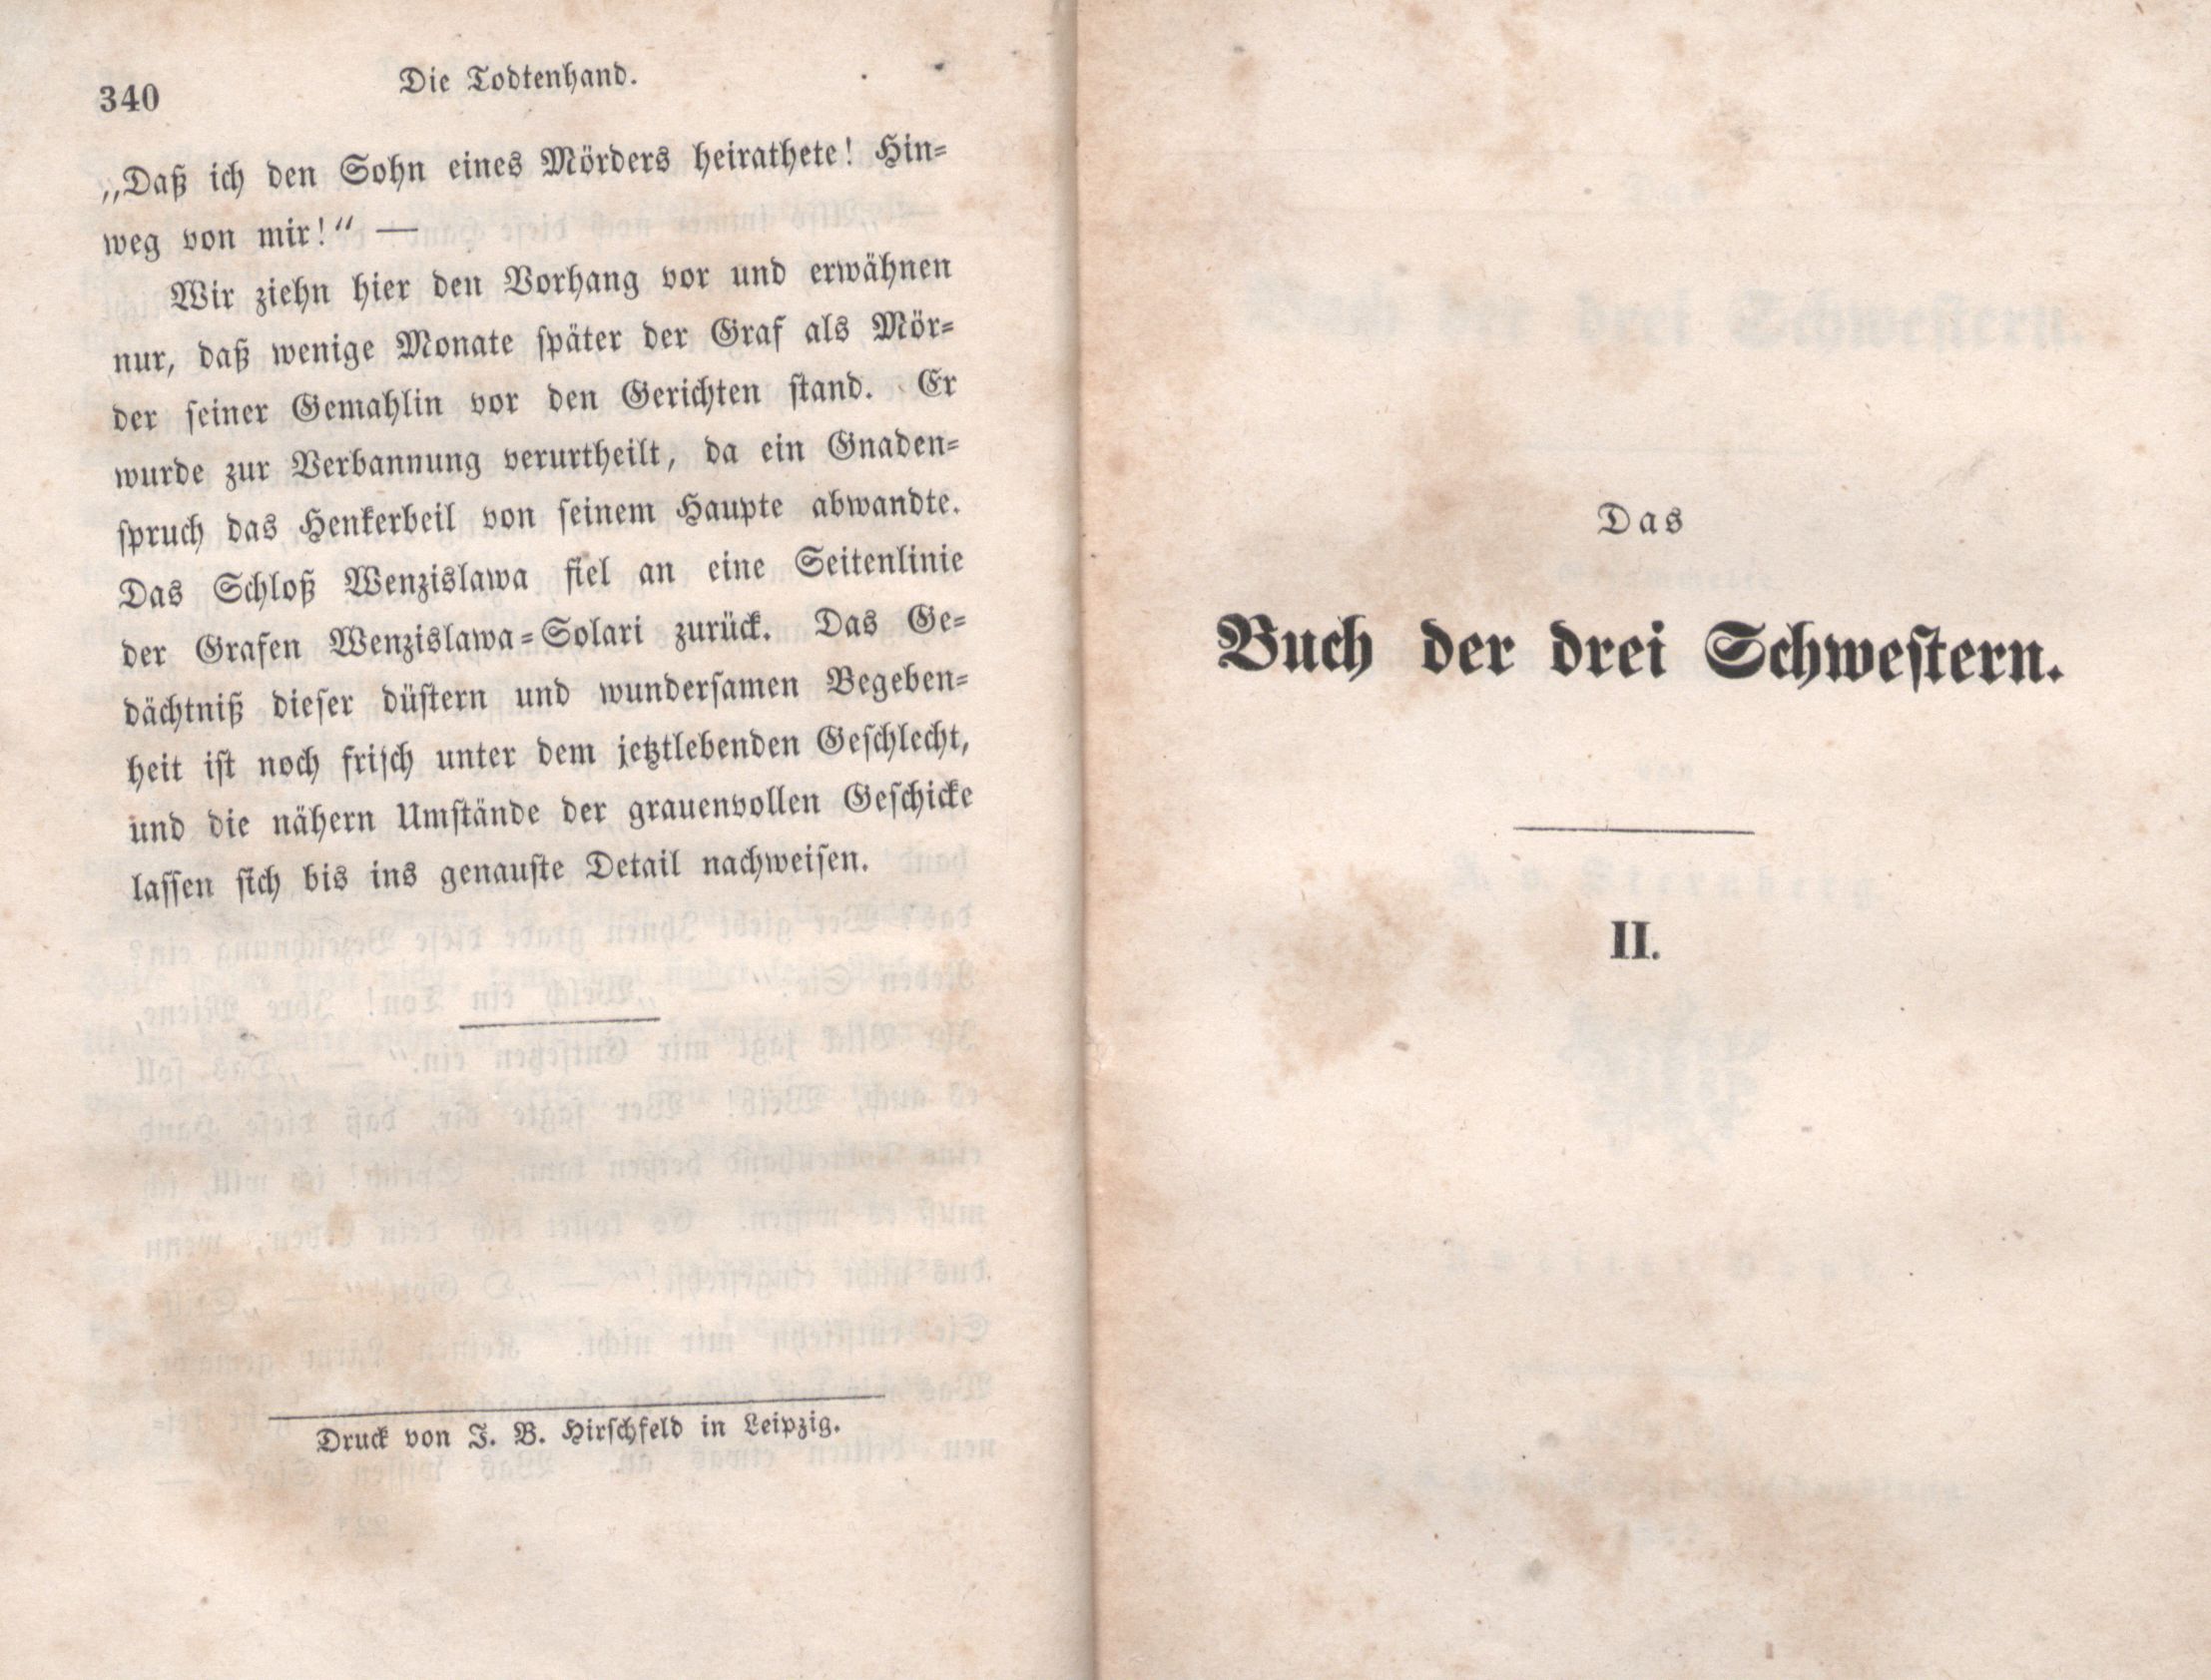 Die Todtenhand (1847) | 24. (340) Основной текст